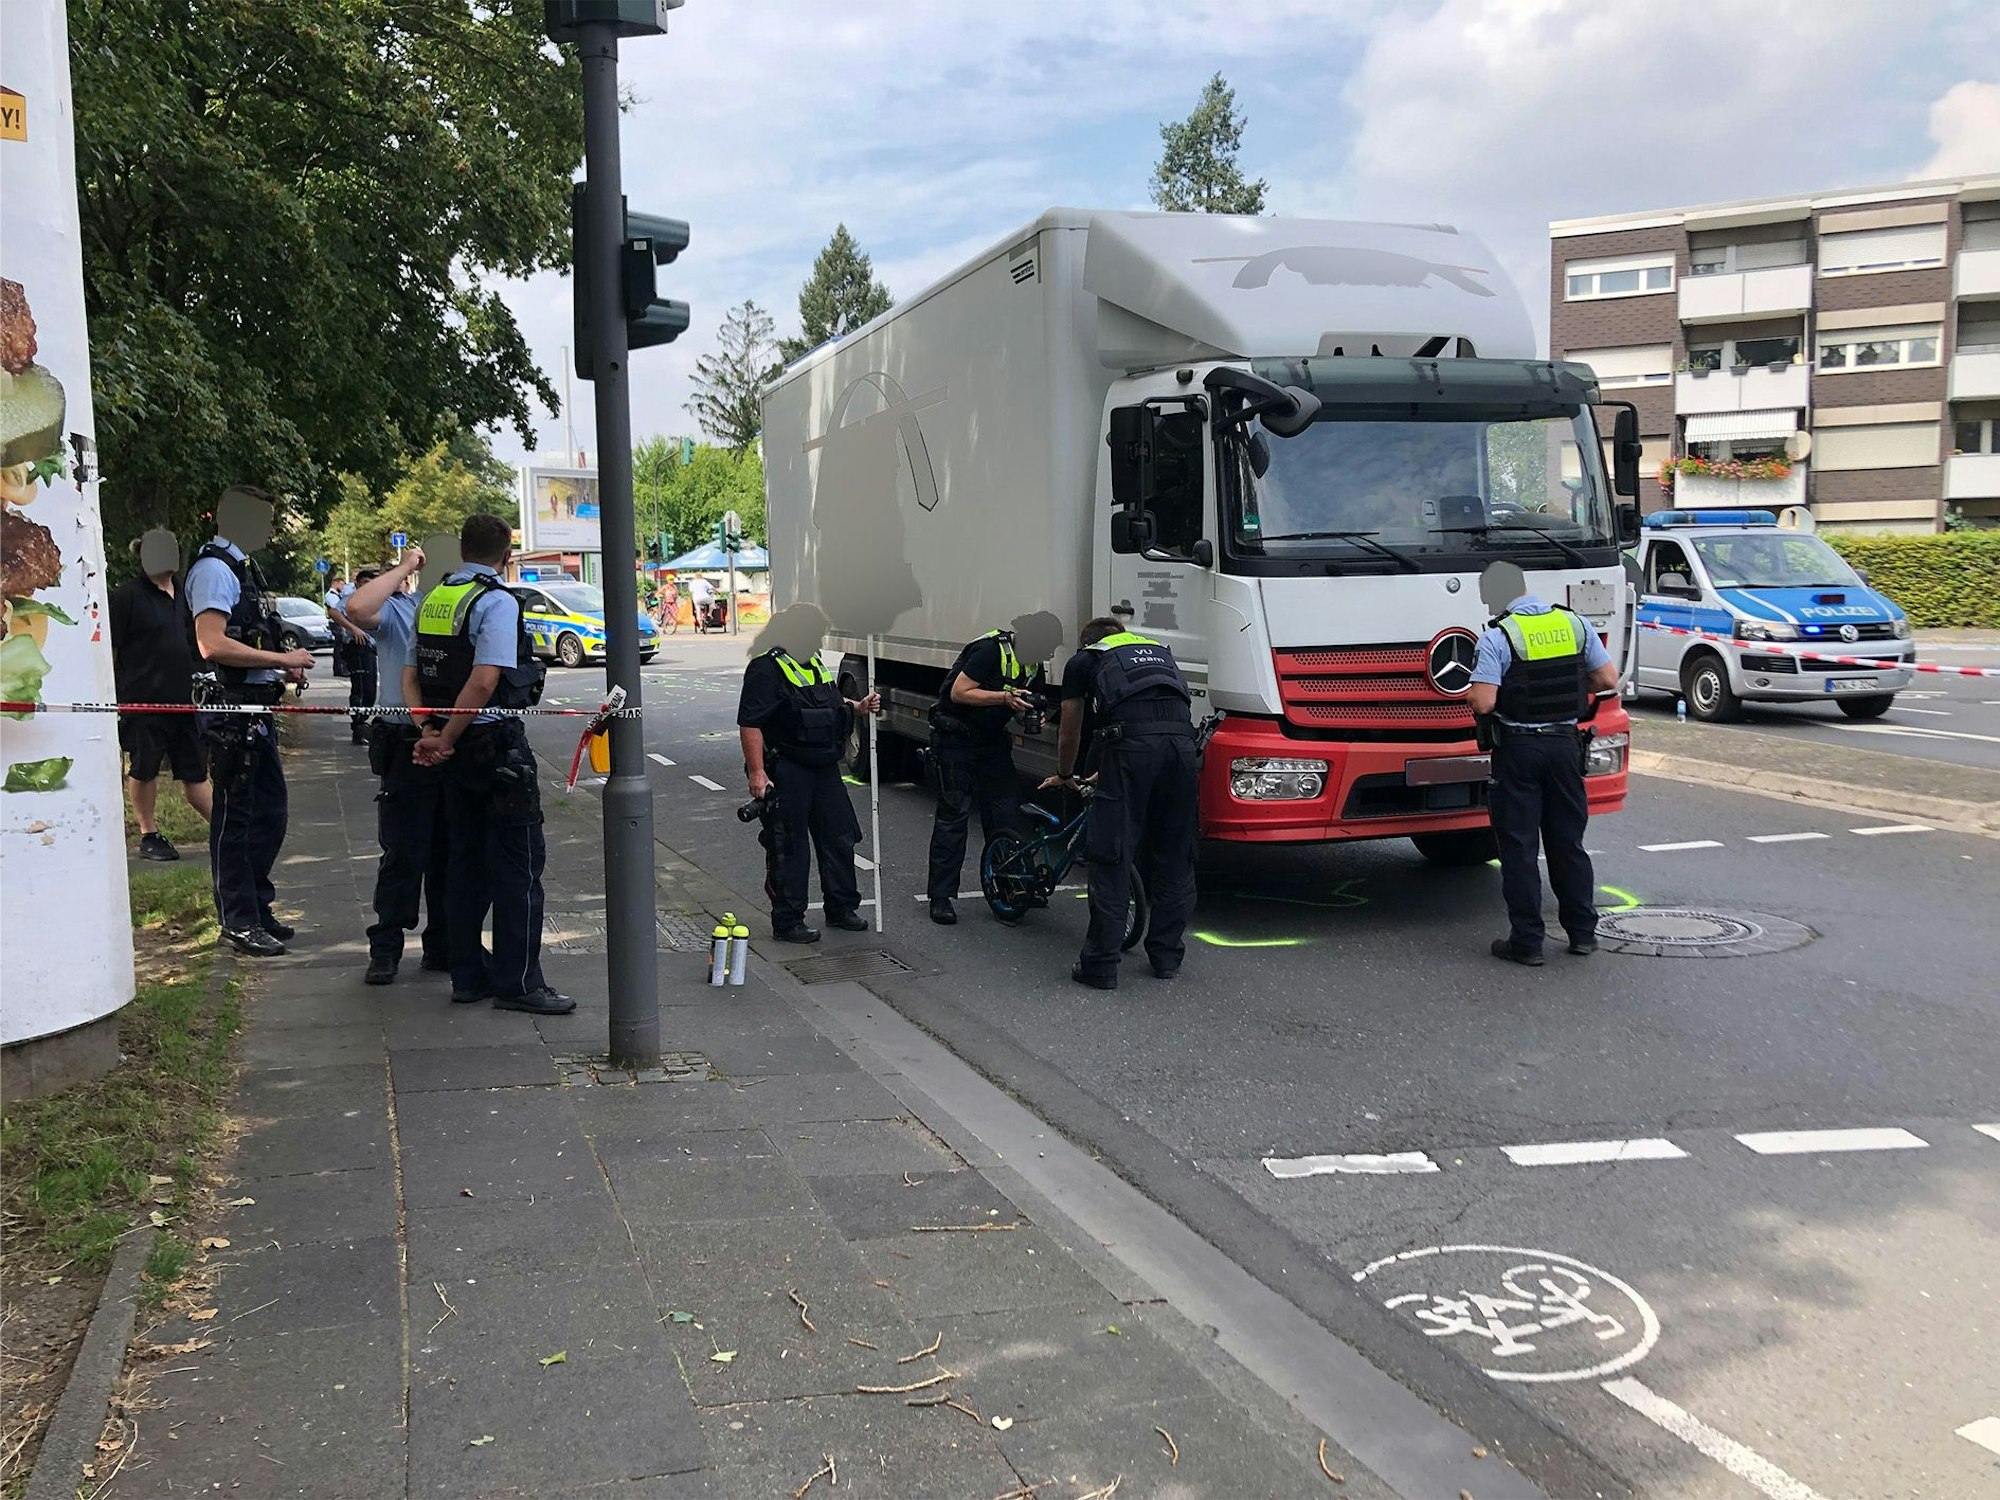 Am Dienstagvormittag gegen 09.50 Uhr kam es an der Ecke Siegburger Straße / Pützchens Chaussee zum folgenschweren Verkehrsunfall. Ein 42-jähriger Radfahrer starb.